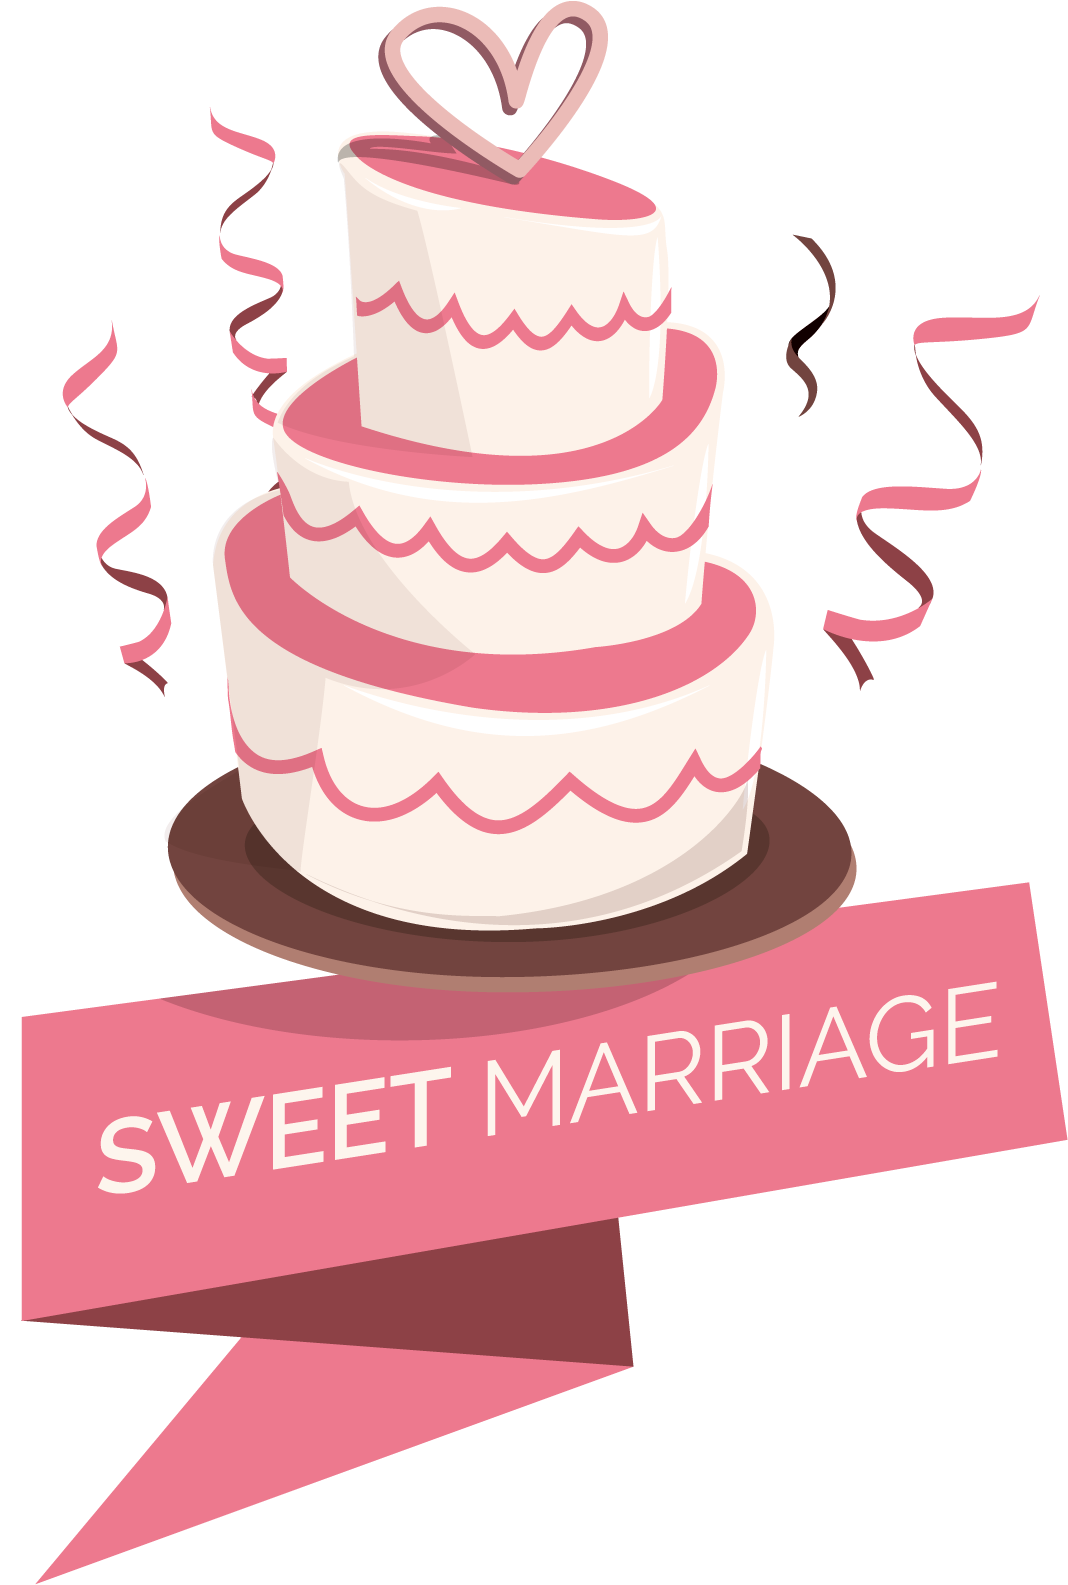 Sweet Marriage Cake Logo PNG image